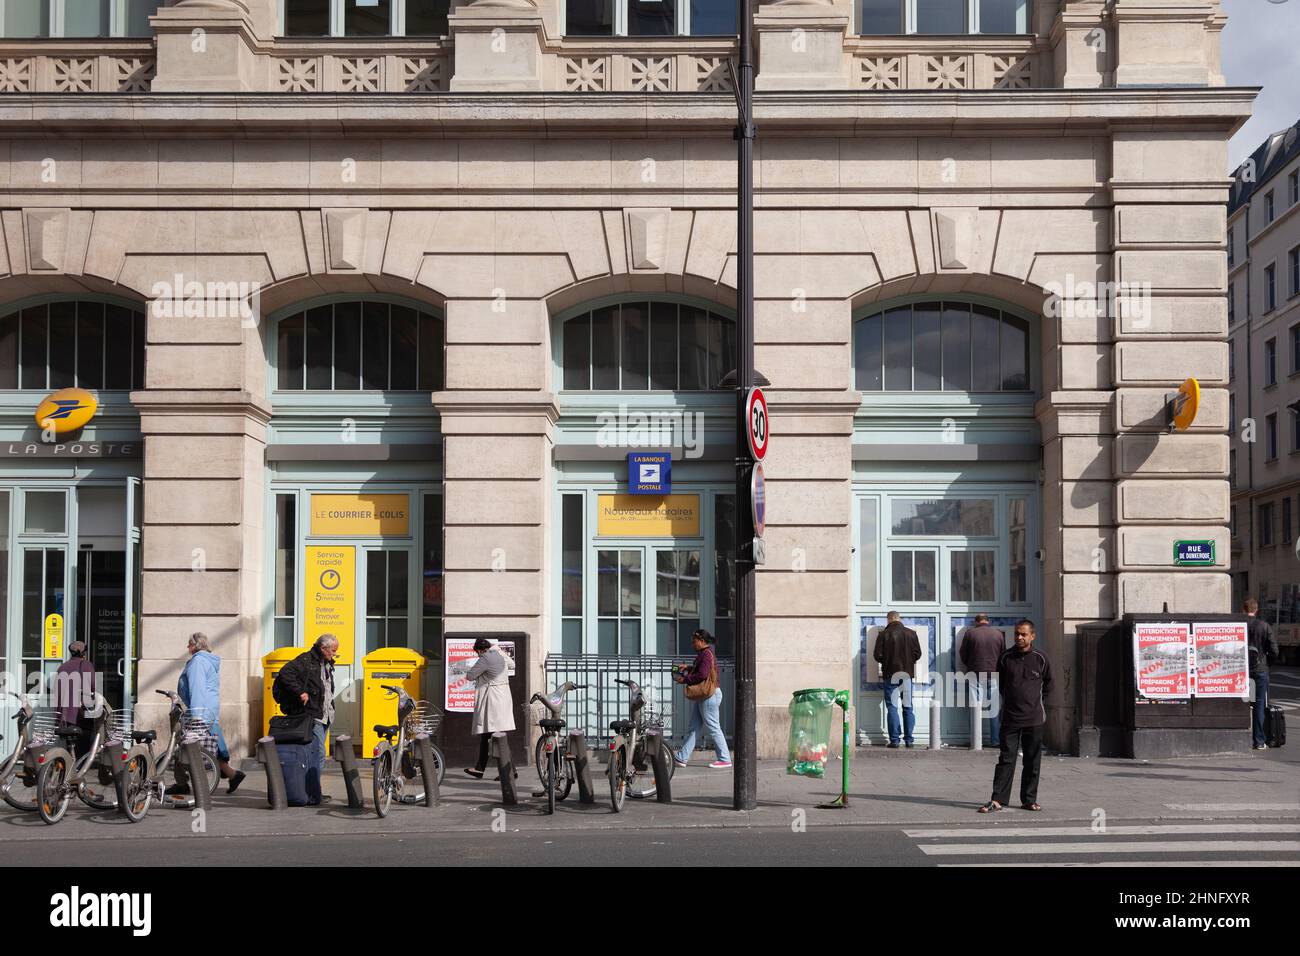 La Poste, la oficina de correos asociada a la estación Gare du Nord en el centro de París, Francia. Los clientes y los peatones están en la acera afuera. R Foto de stock